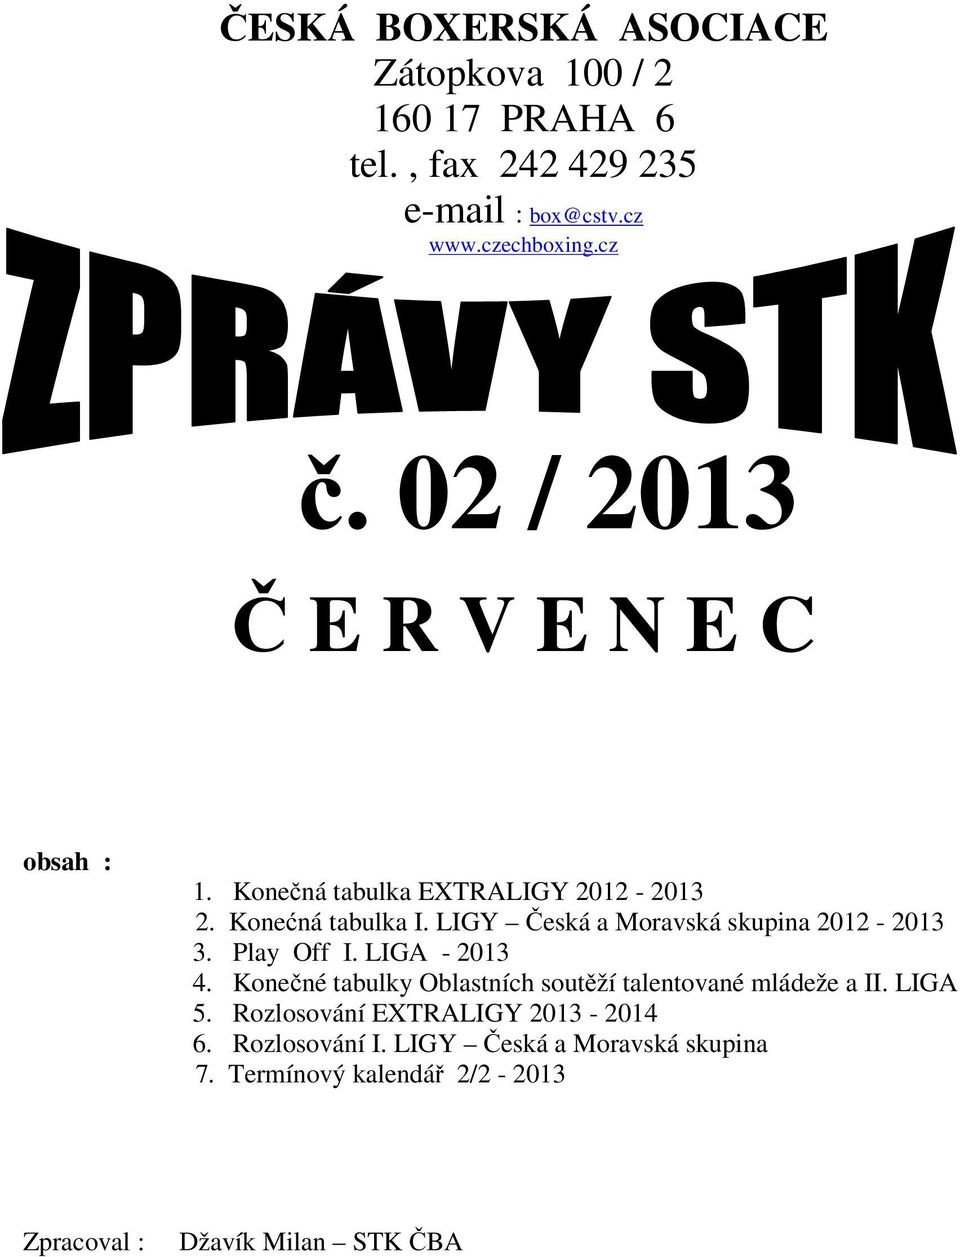 LIGY Česká a Moravská skupina 2012-2013 3. Play Off I. LIGA - 2013 4.